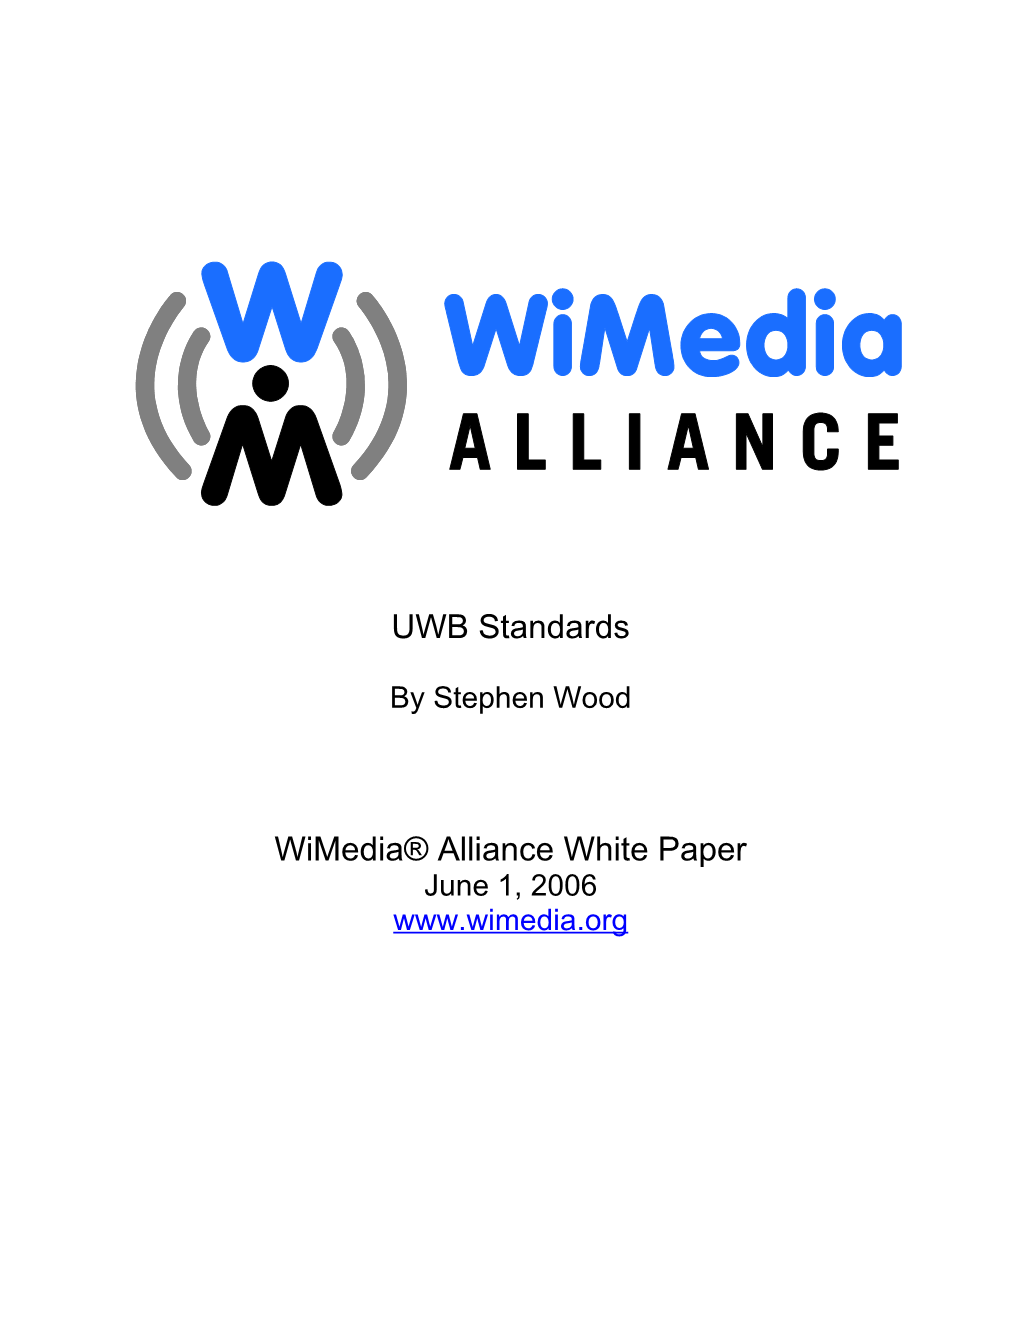 Wimedia Alliance Letterhead